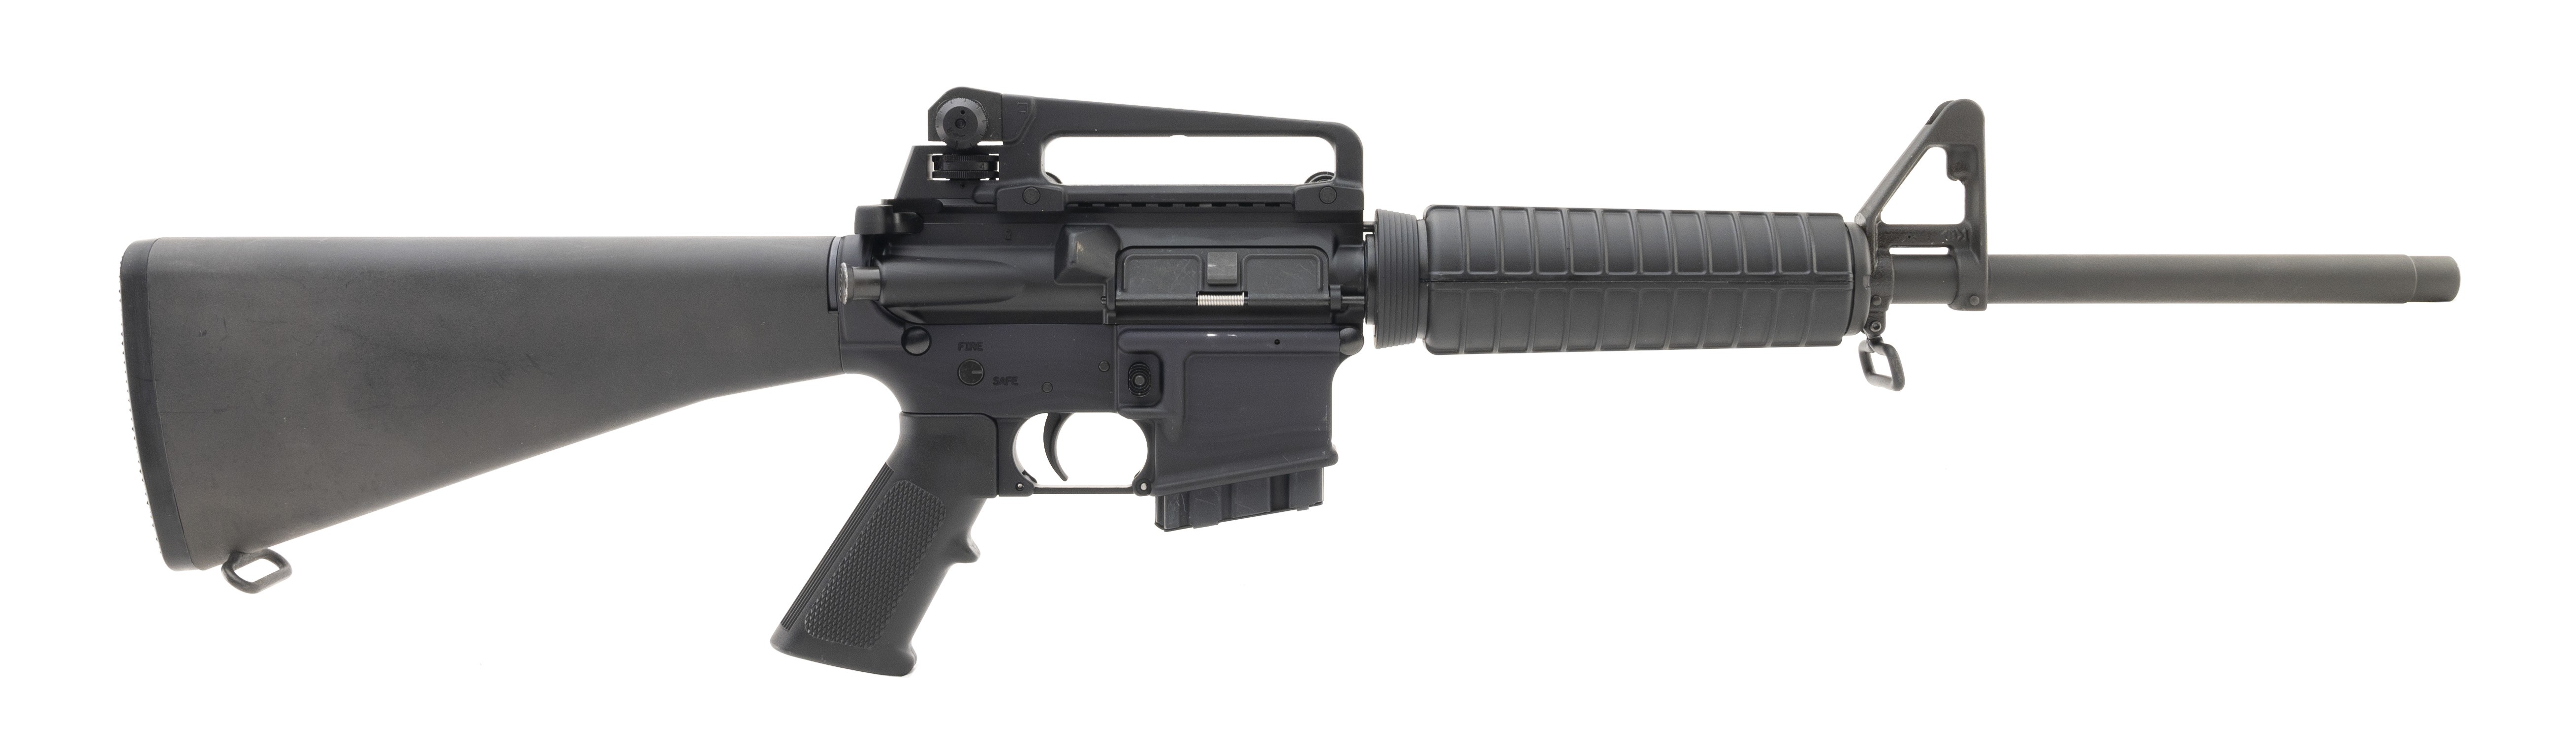 Bushmaster XM15-E2S 5.56mm for sale.